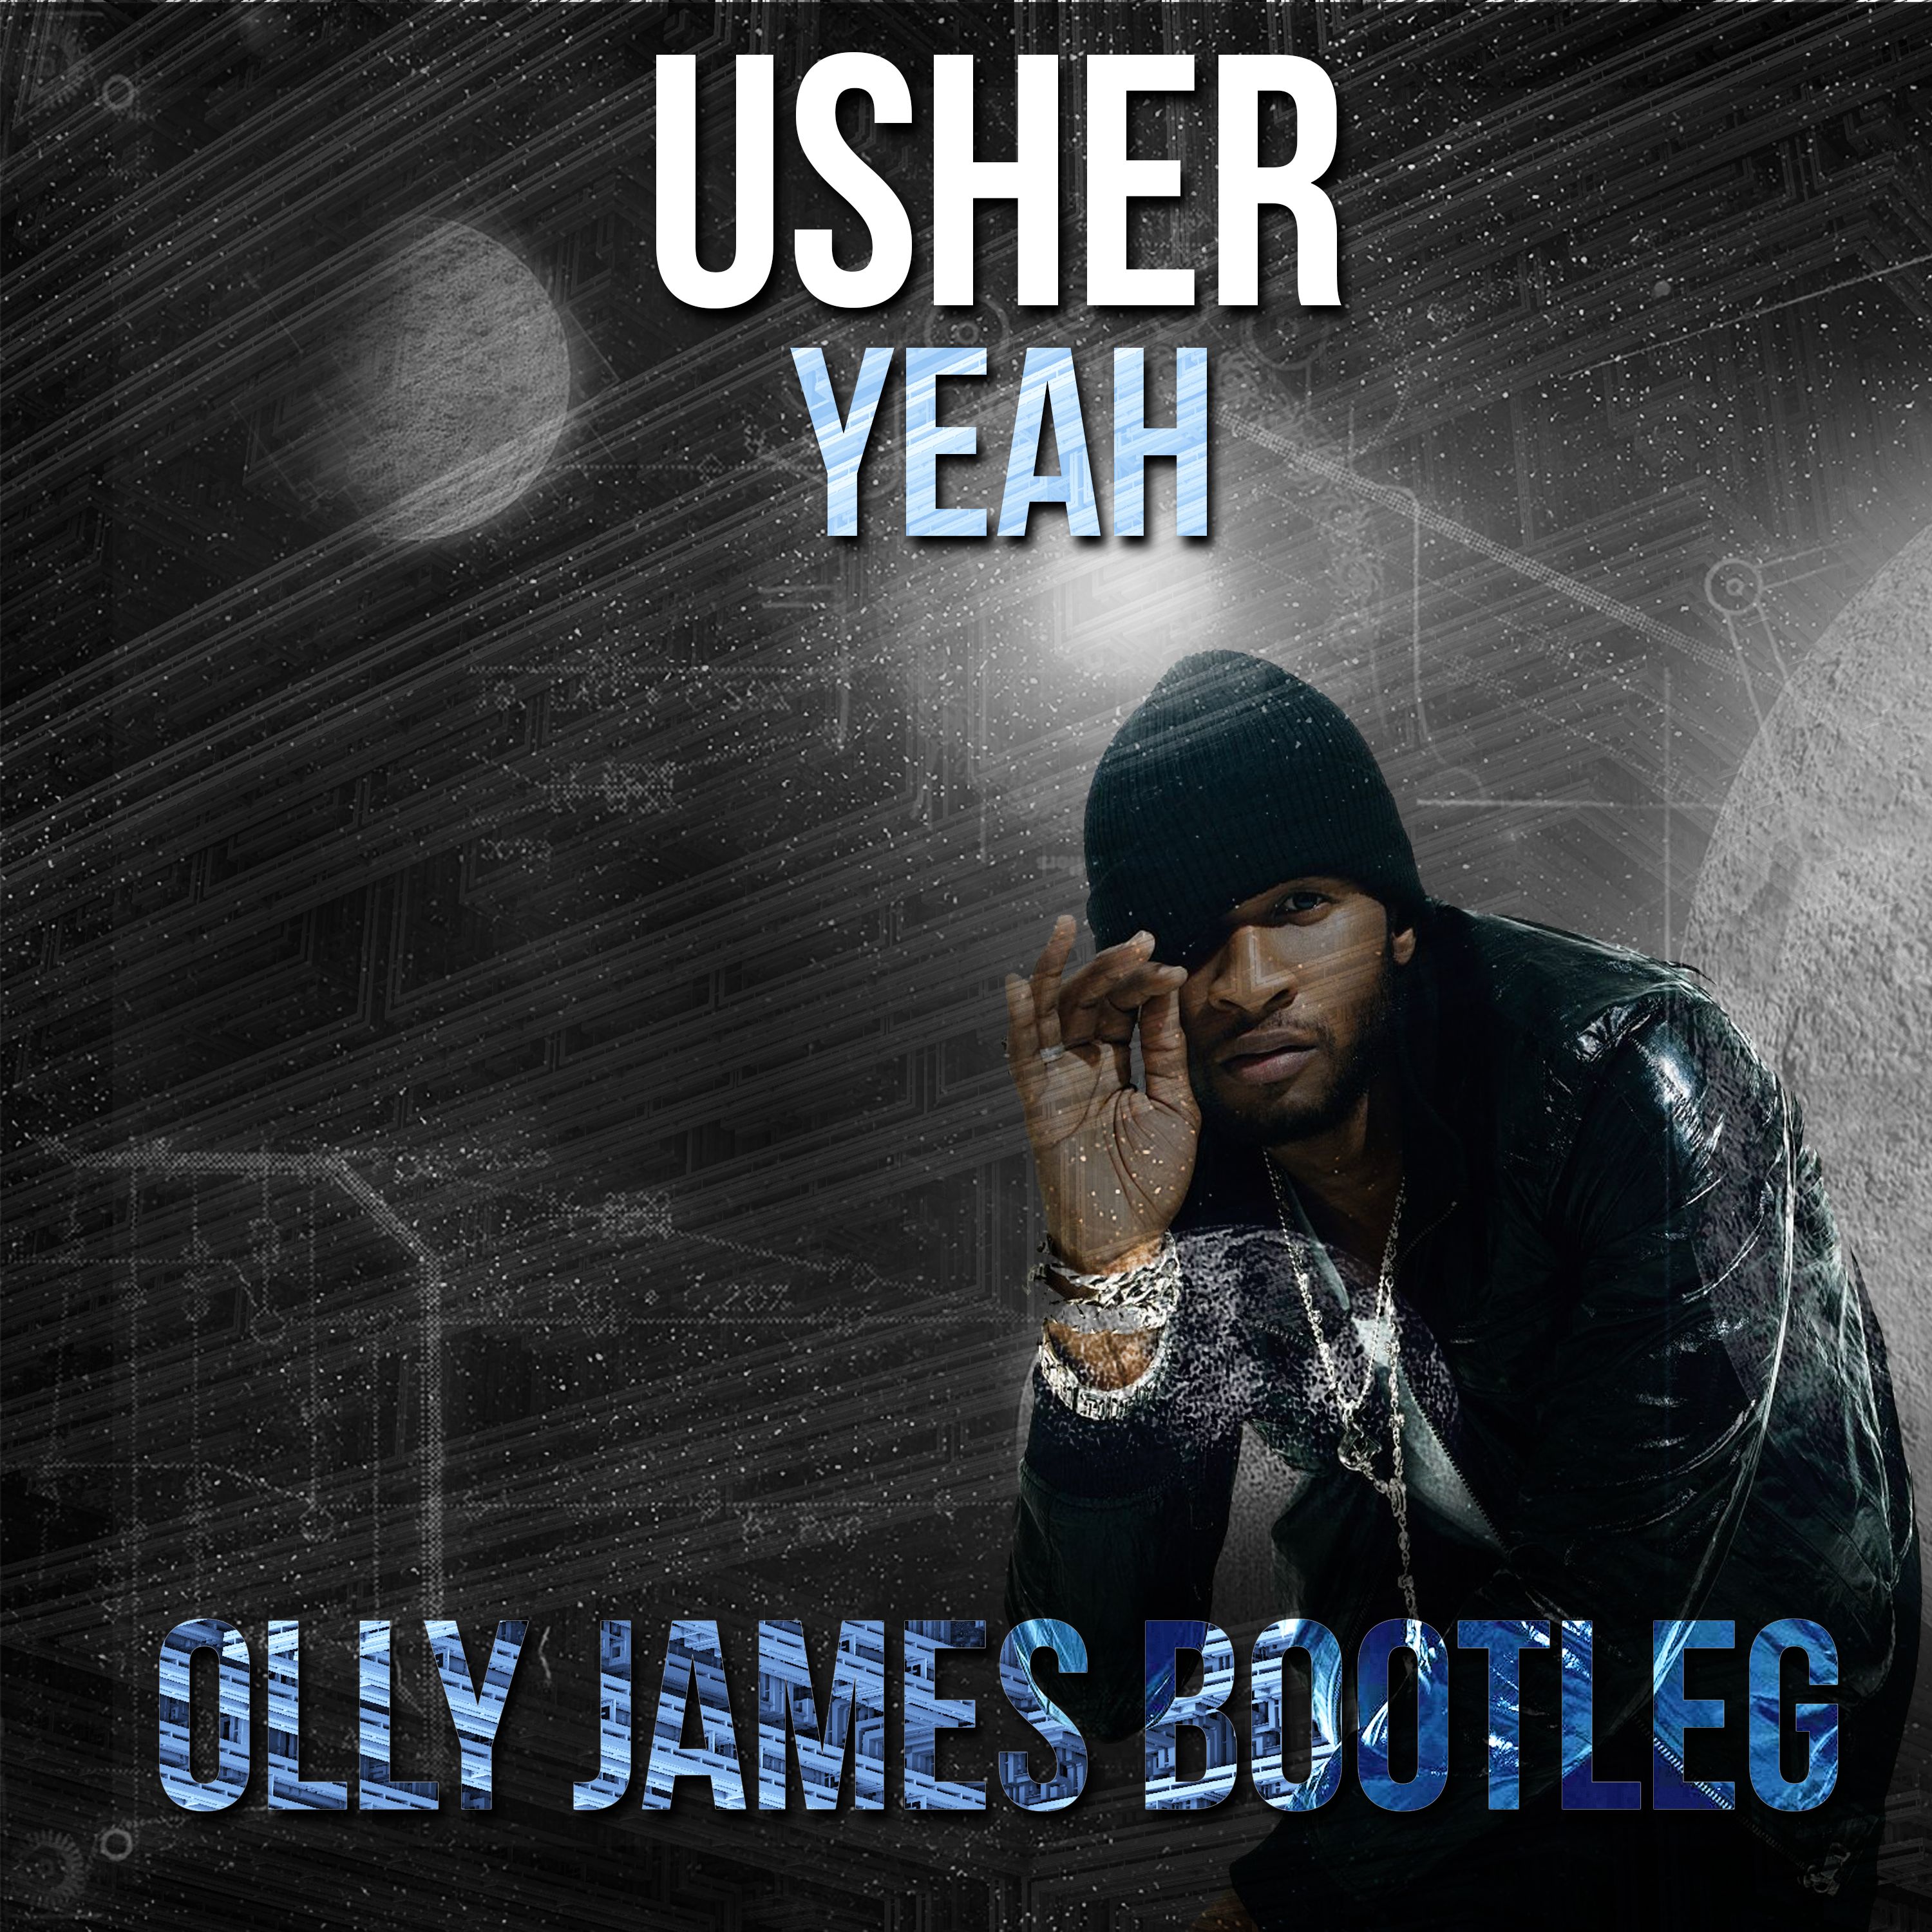 Soo dejiso Usher - Yeah (Olly James Bootleg)